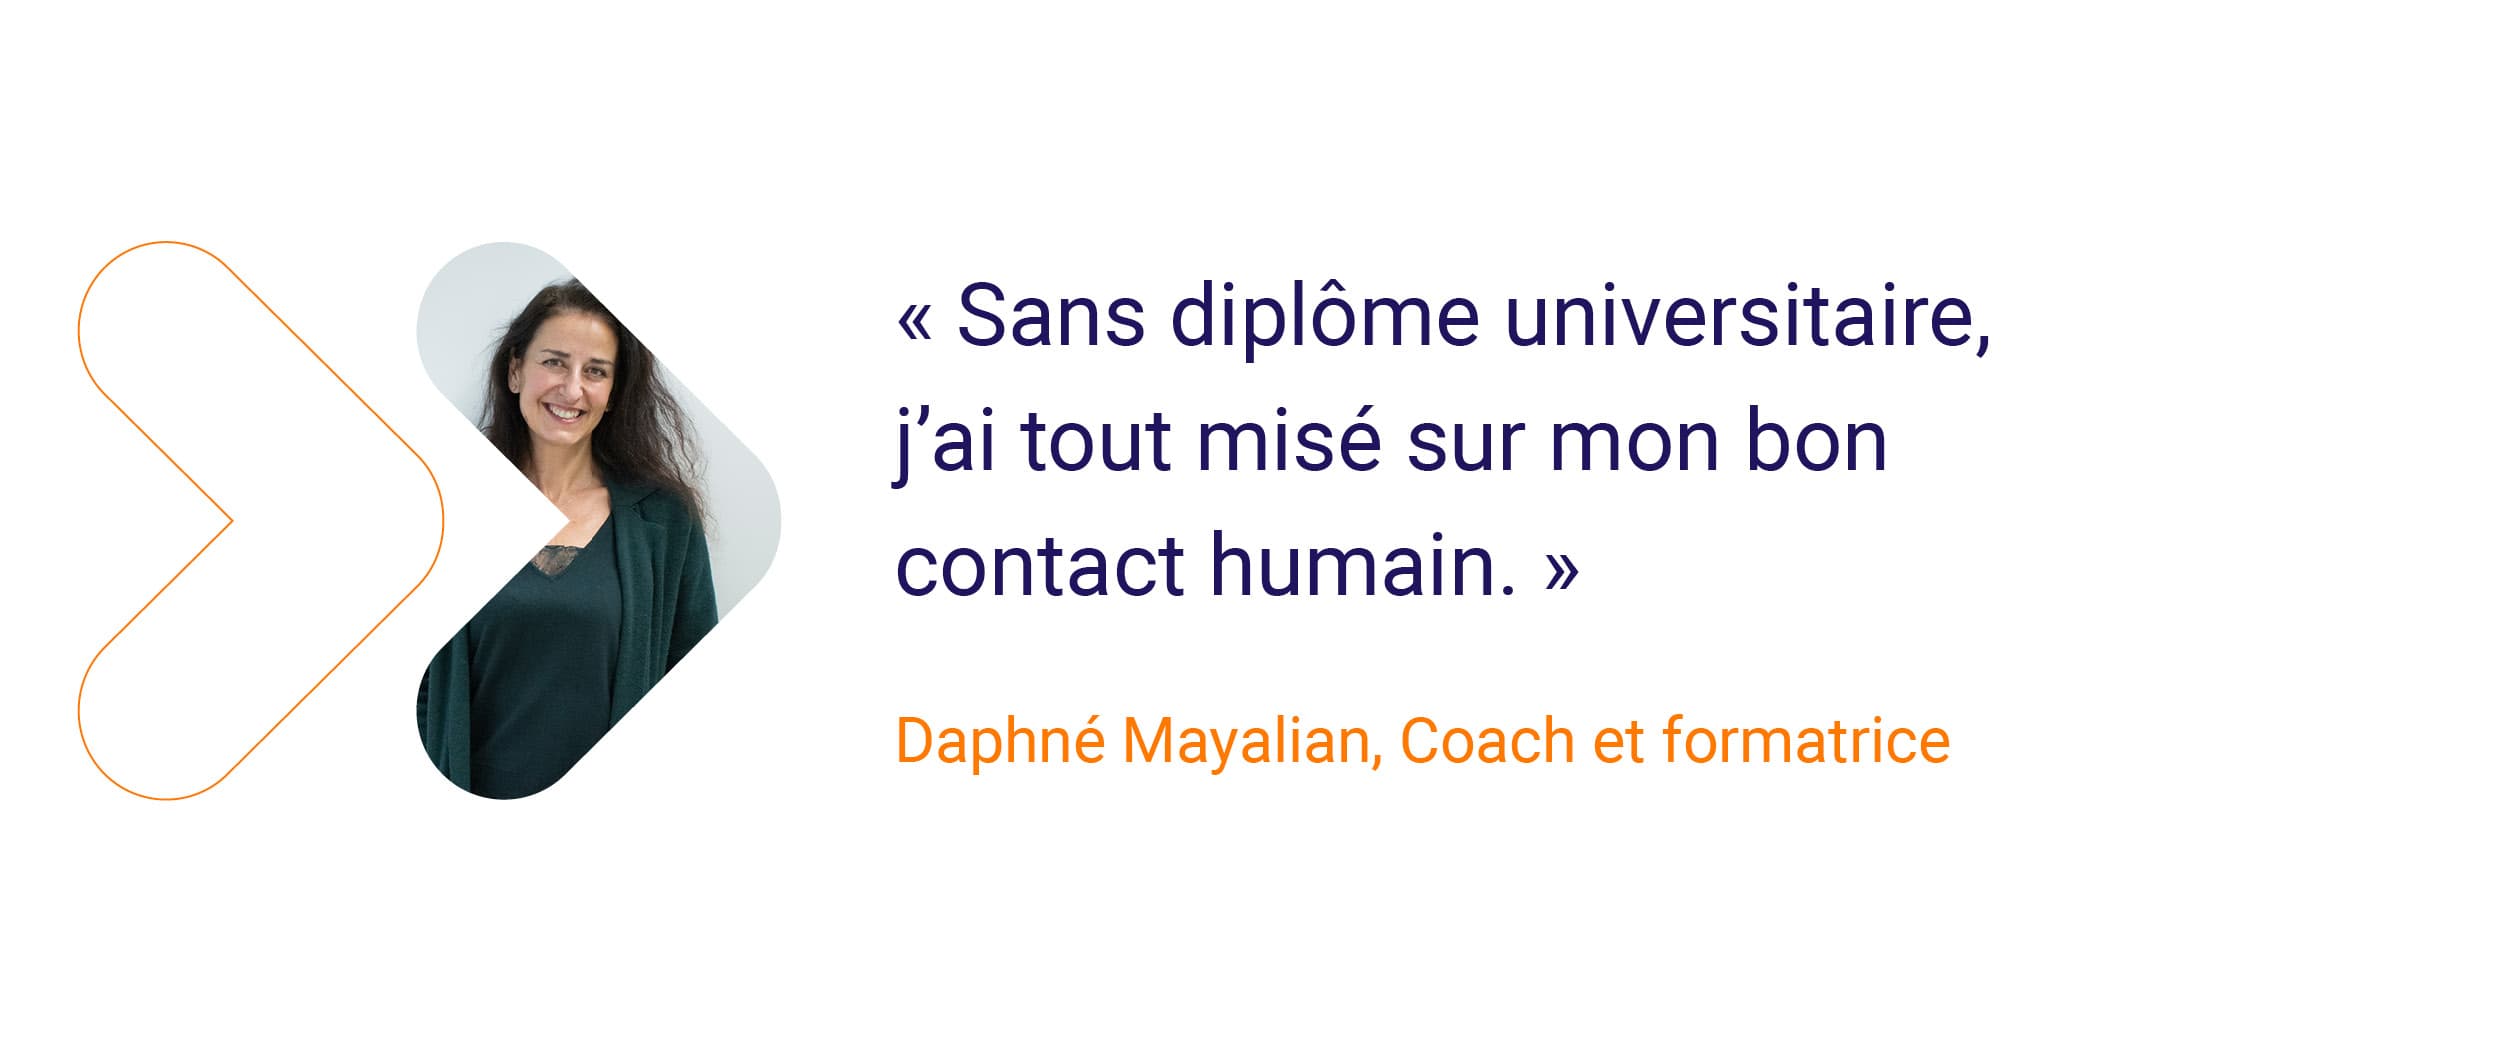 Daphné - « Sans diplôme, j’ai tout misé sur mon bon contact humain. »